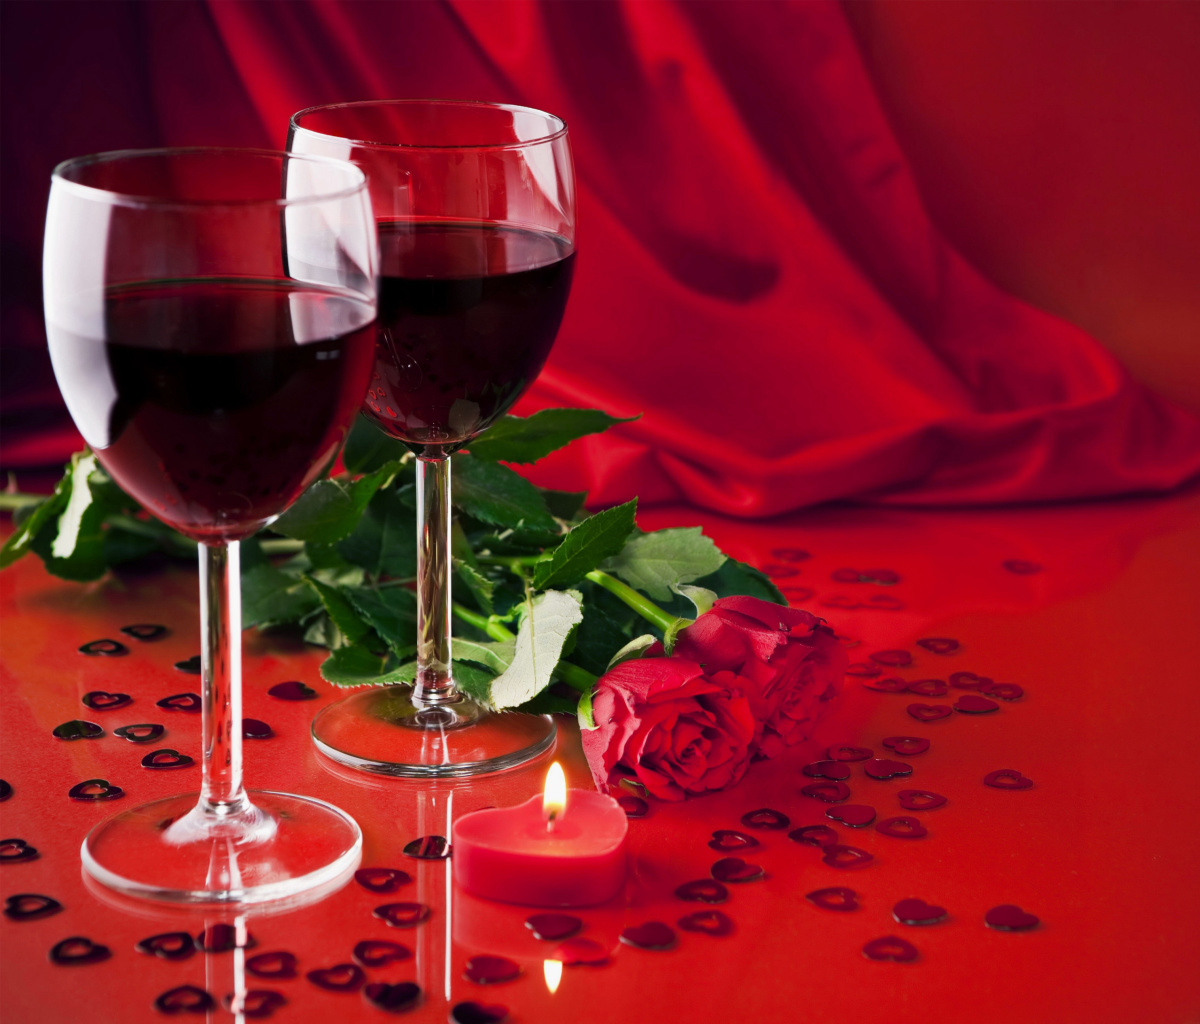 Обои Romantic with Wine 1200x1024